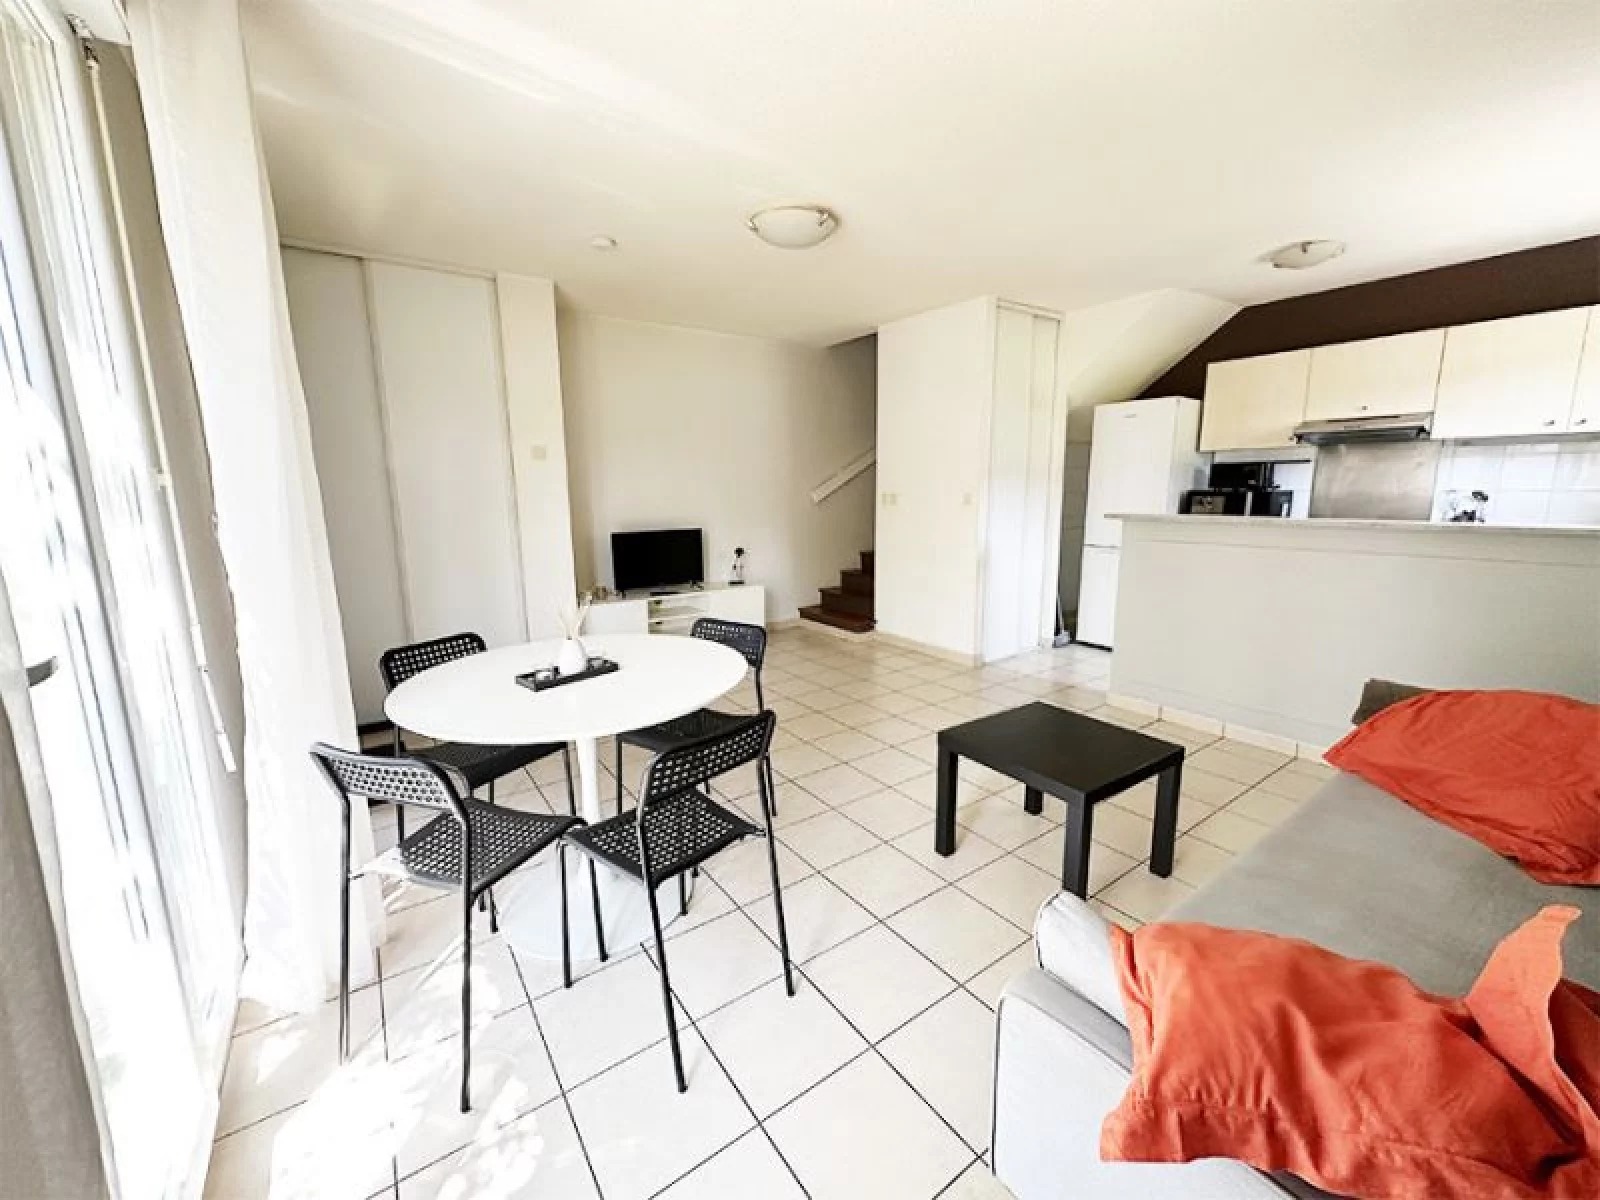 Location appartement duplex meublé 2 pièces 47m² (Paris est - Bry sur Marne)